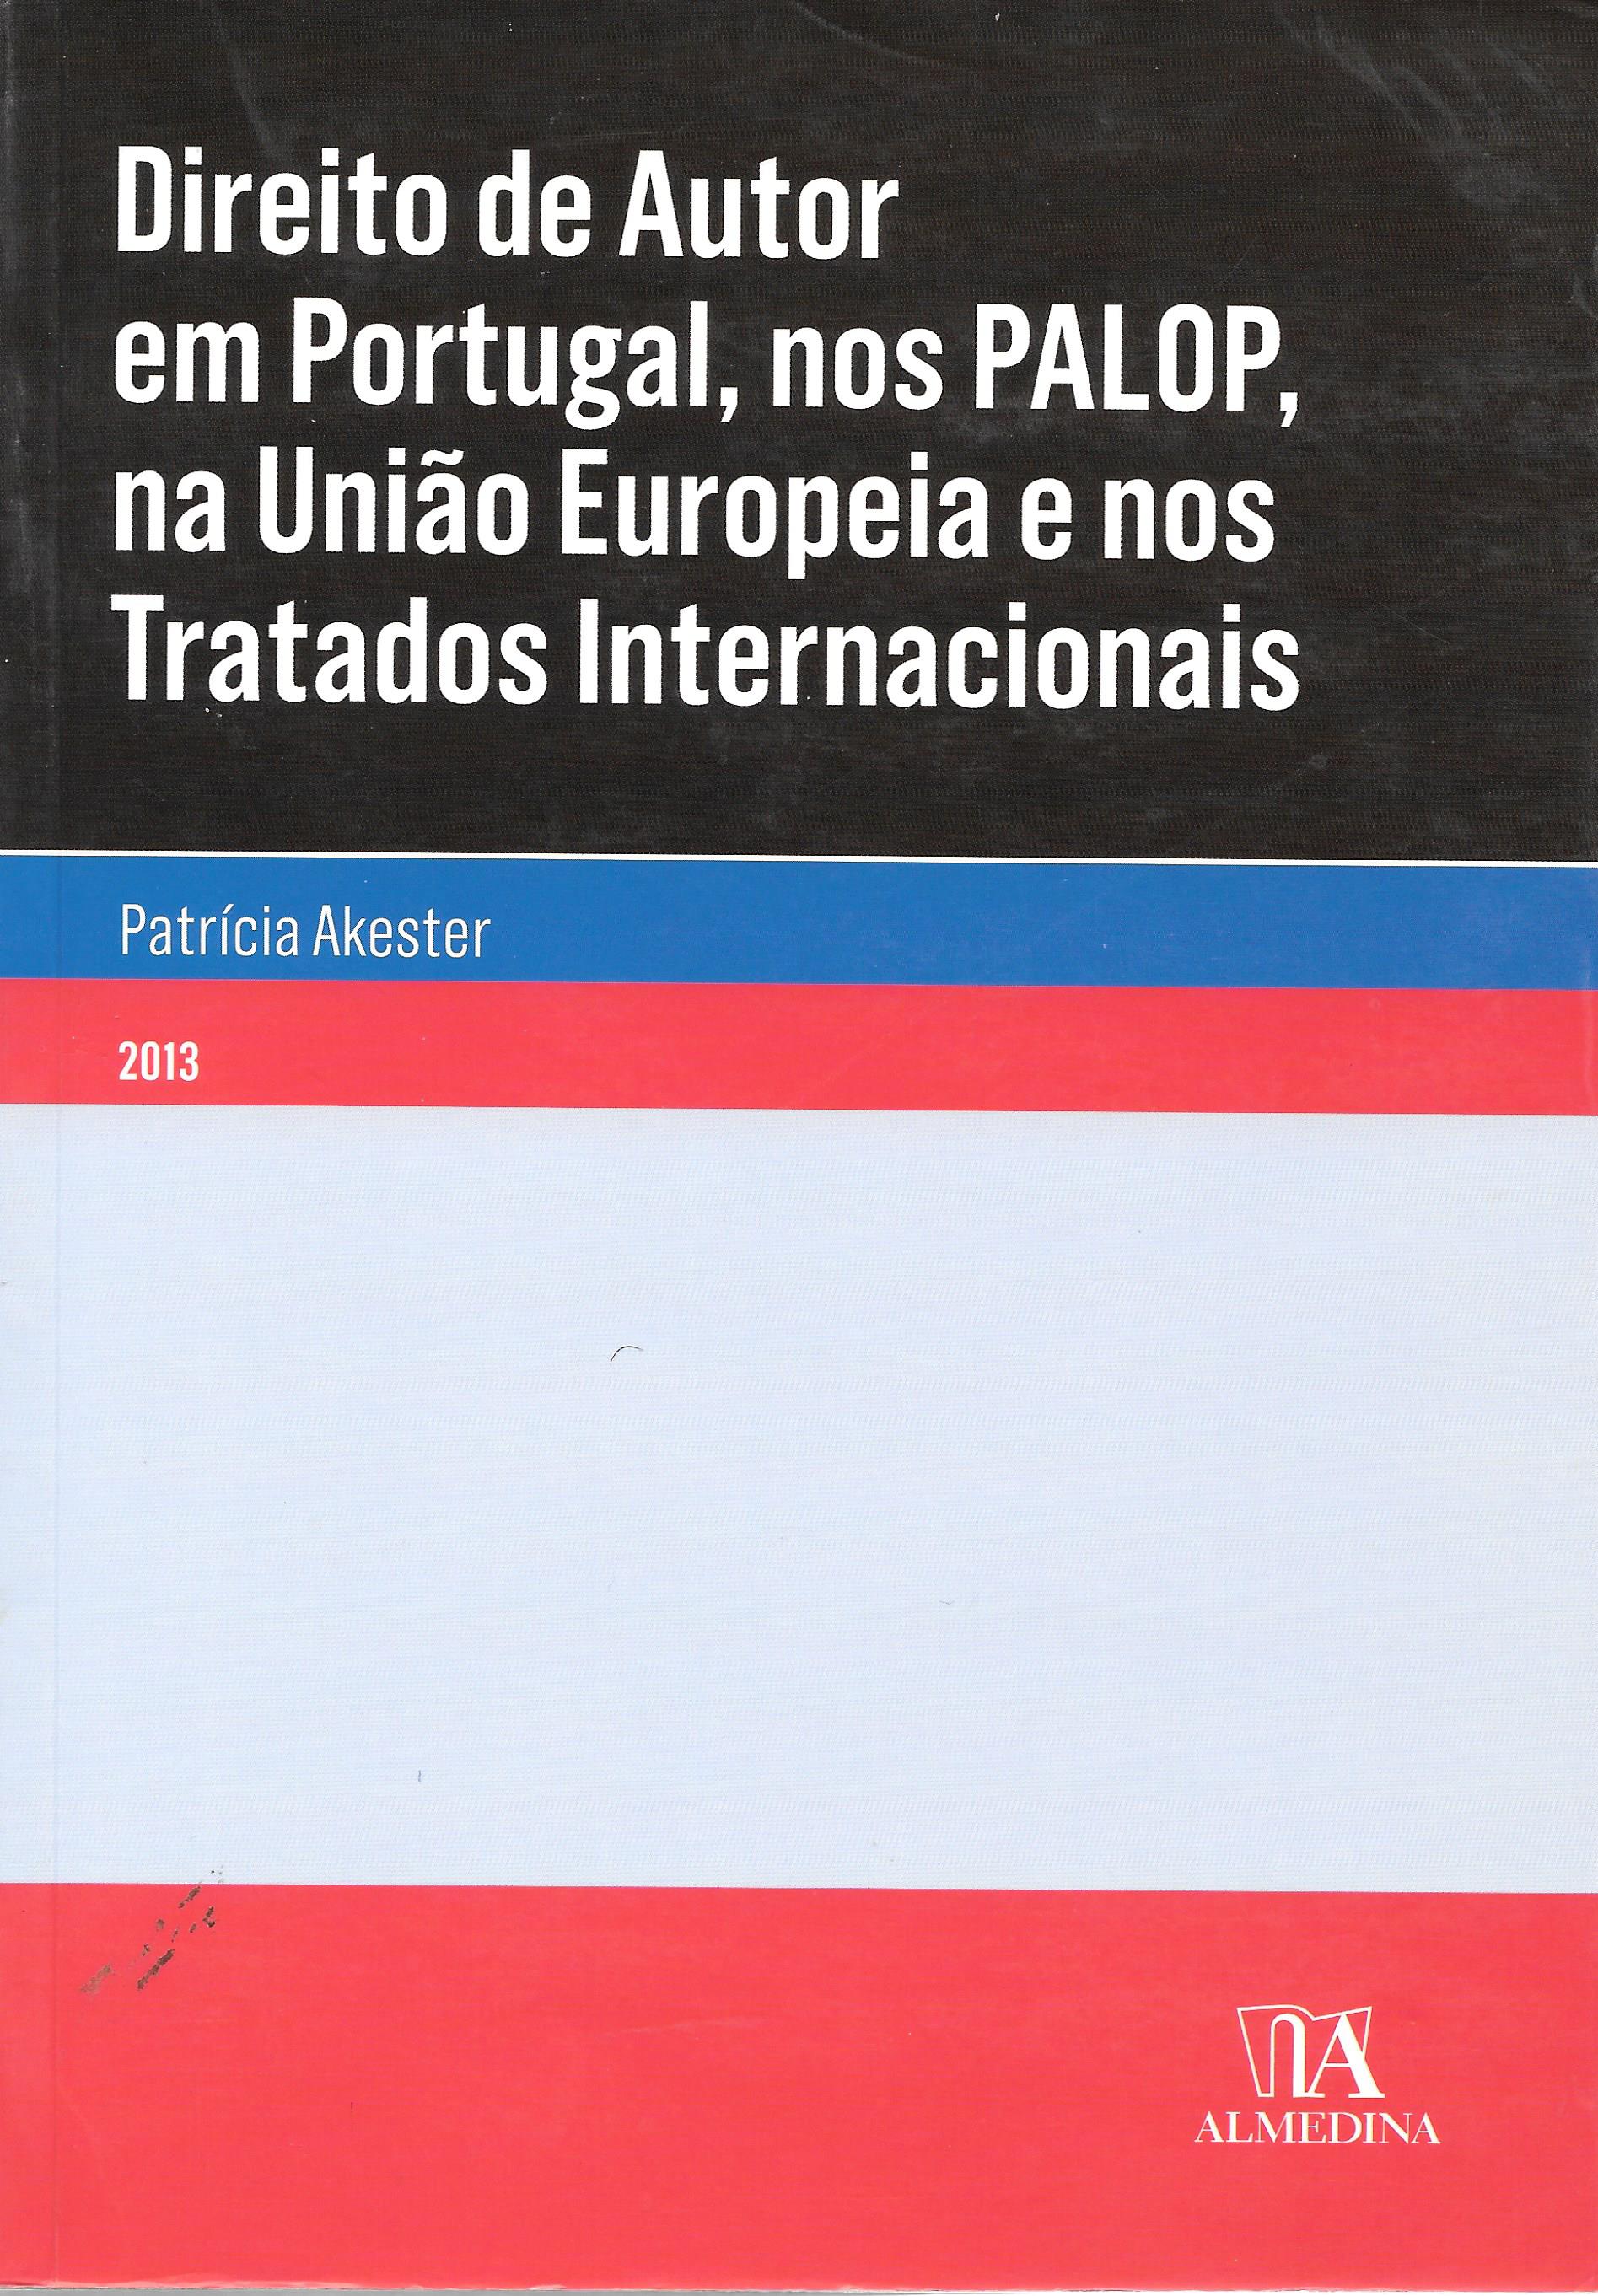 Direito de Autor em Portugal, nos PALOP, na União Europeia e nos Tratados Internacionais